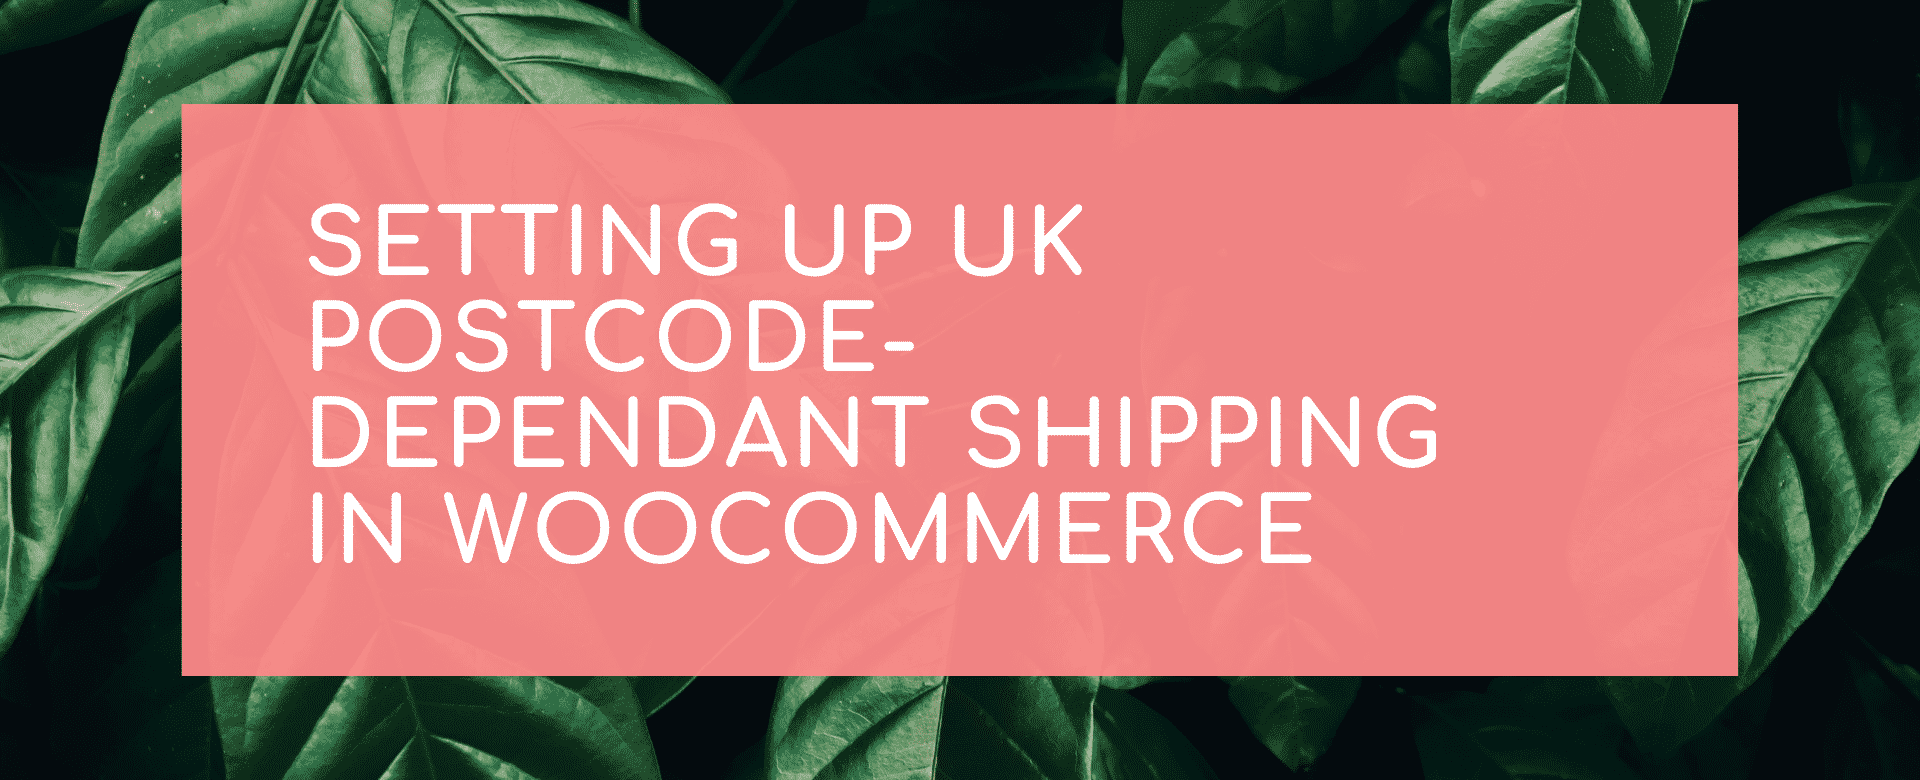 Setting Up UK Postcode-Dependant Shipping in Woocommerce